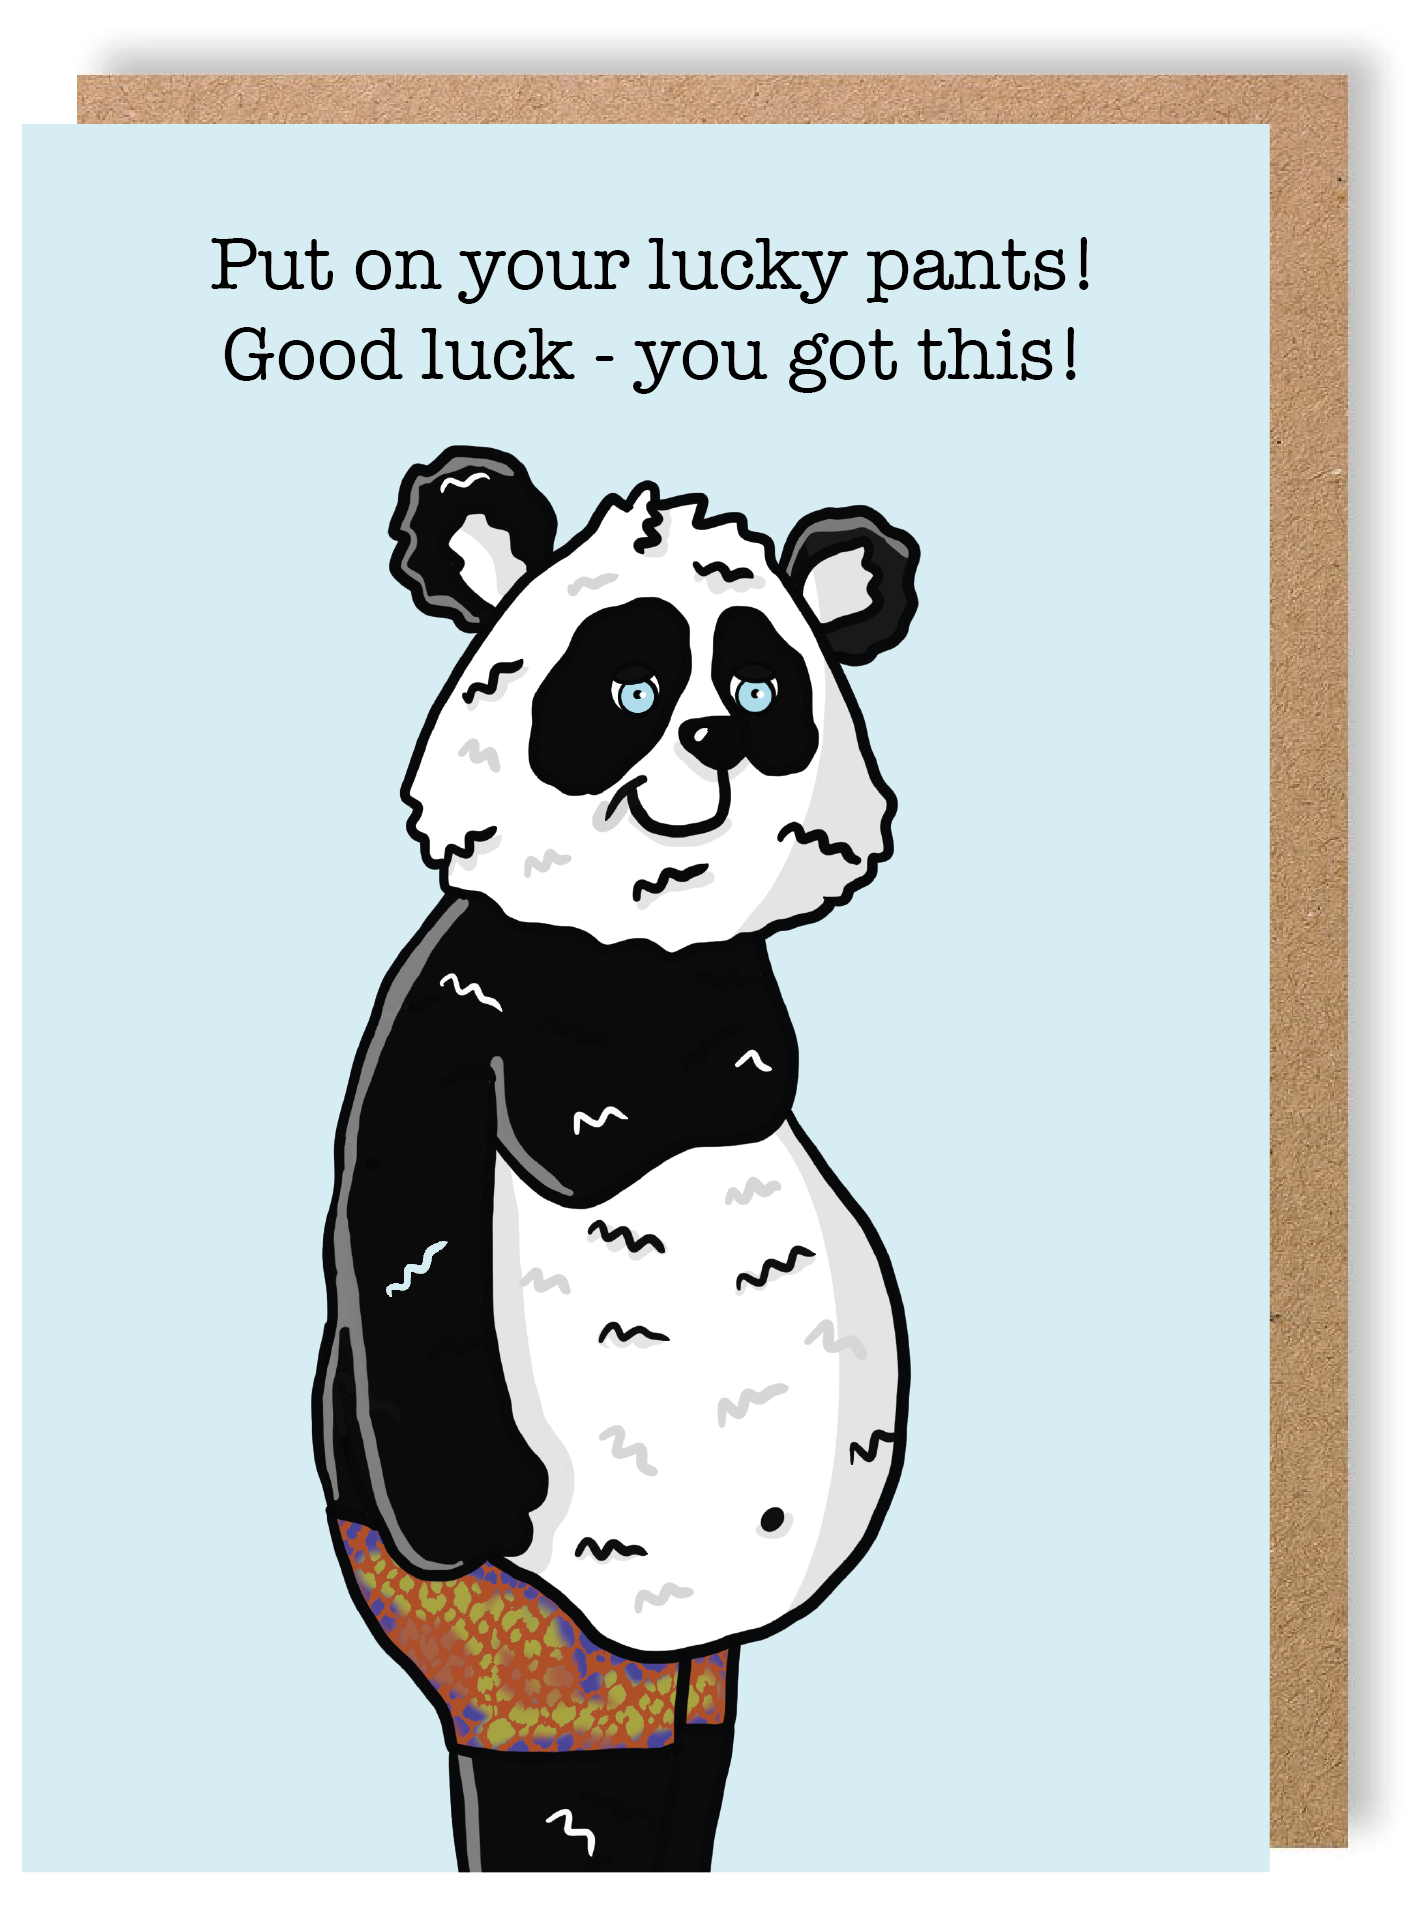 Good Luck Pants - Panda - Greetings Card - LukeHorton Art